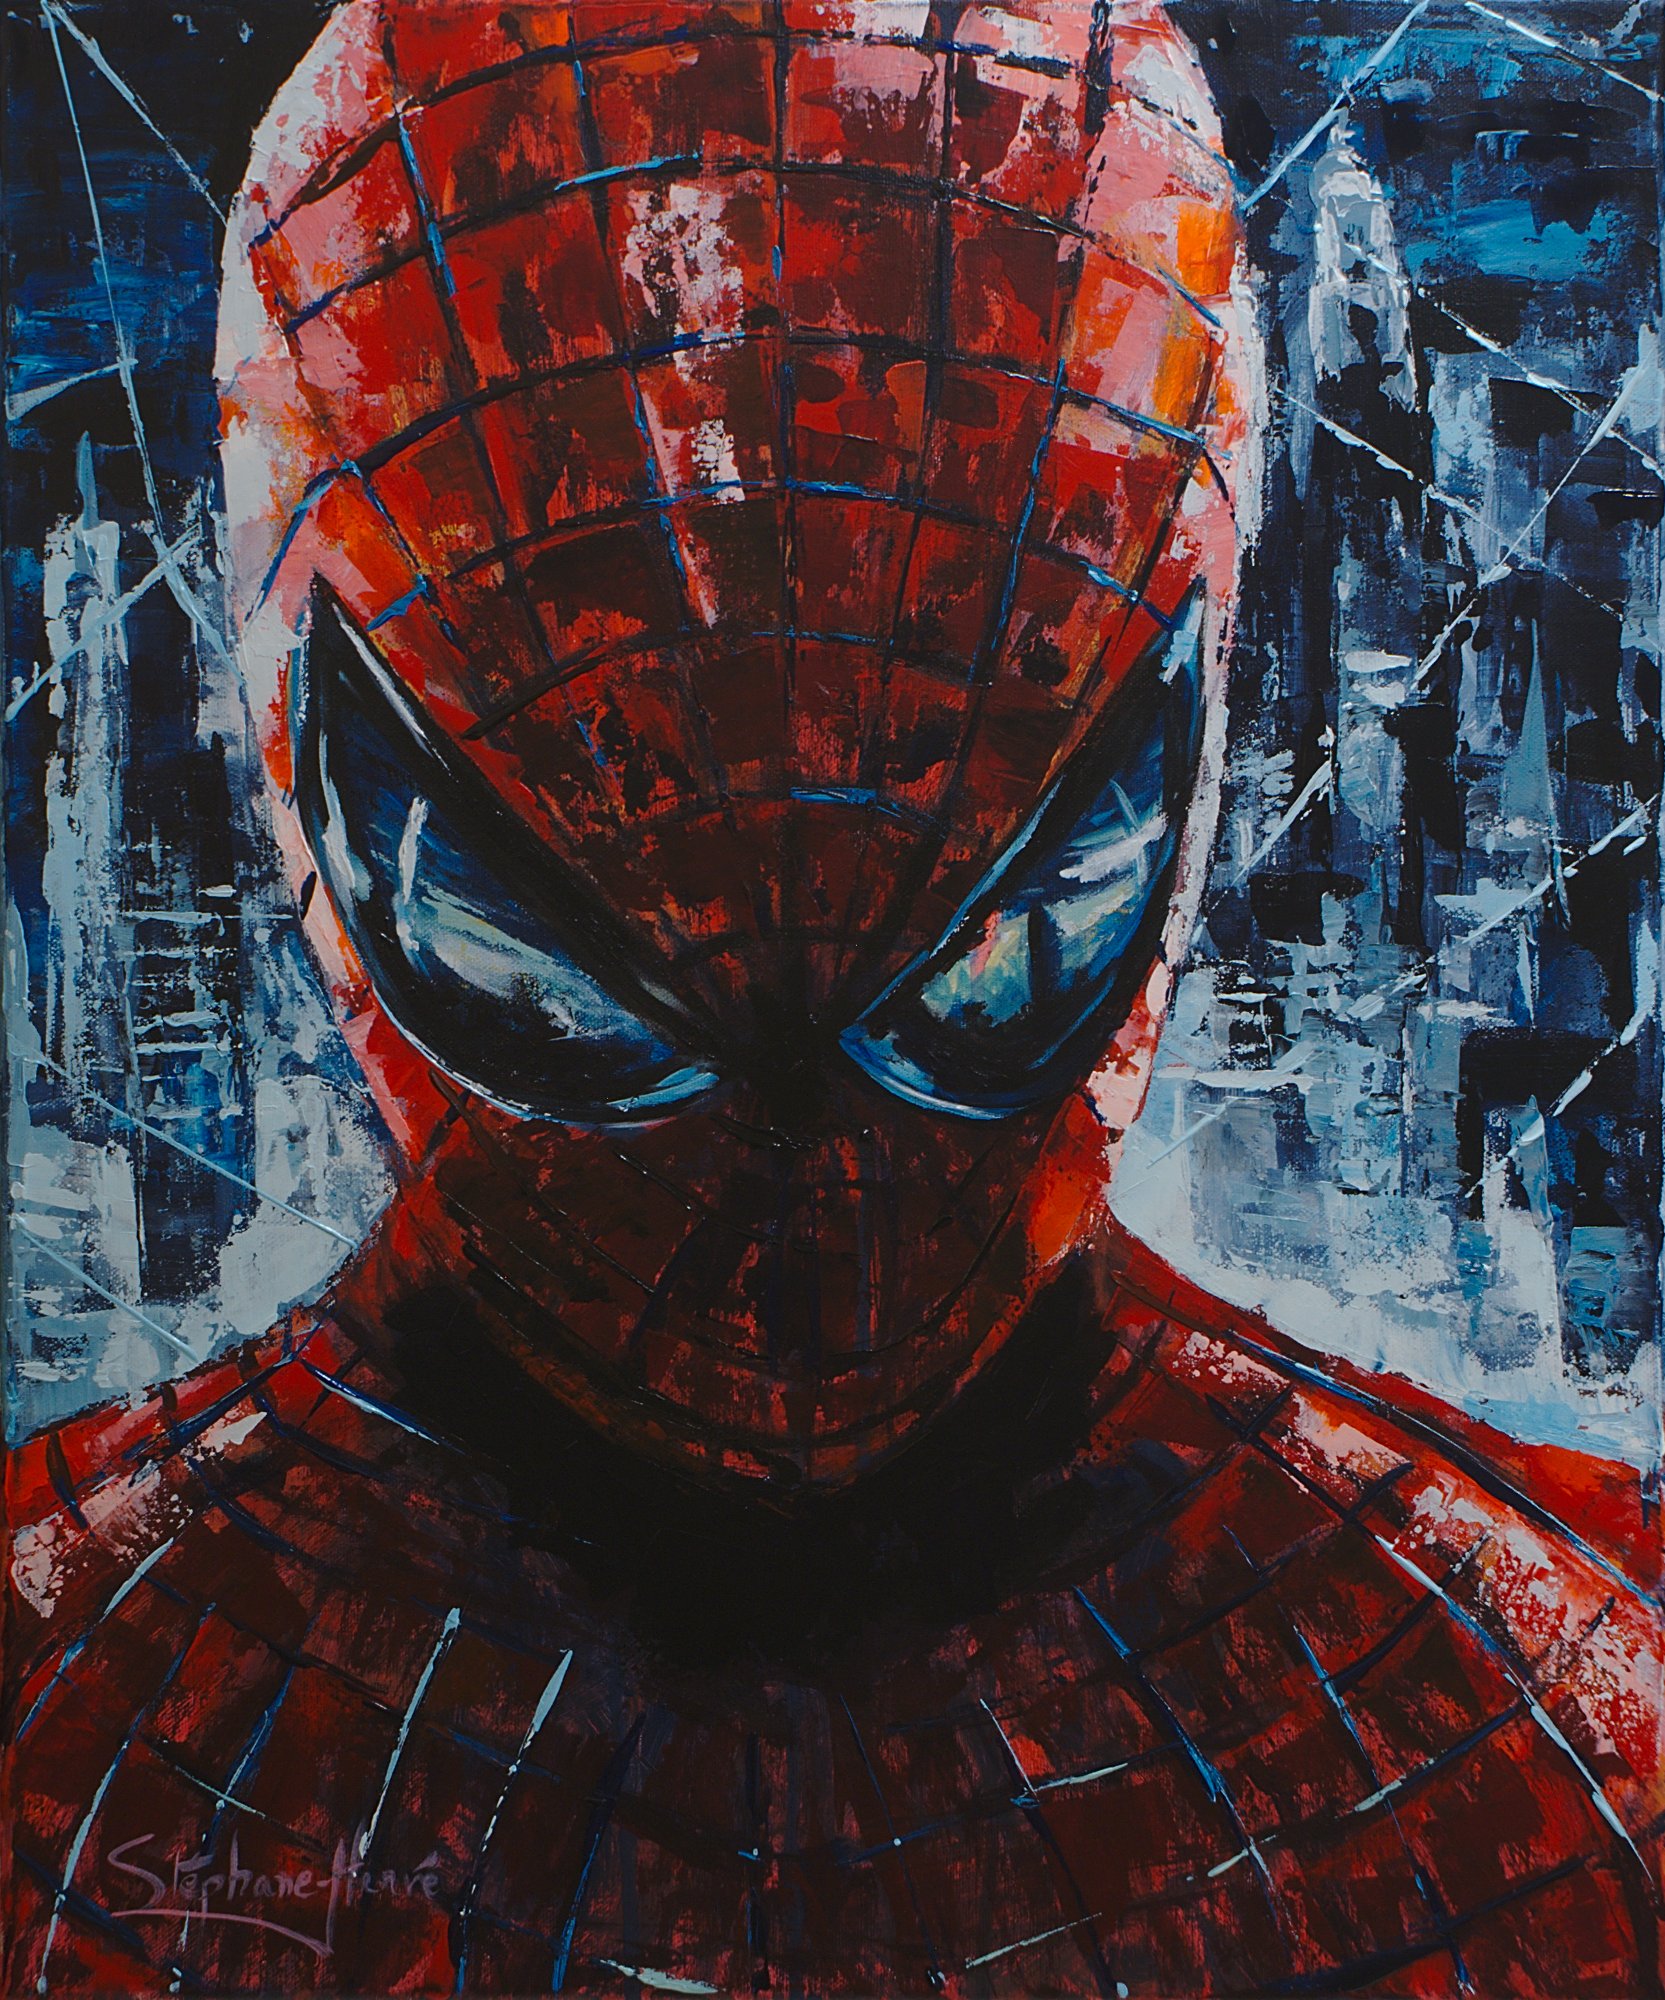 Image agrandie de Spiderman (Spider-Man)